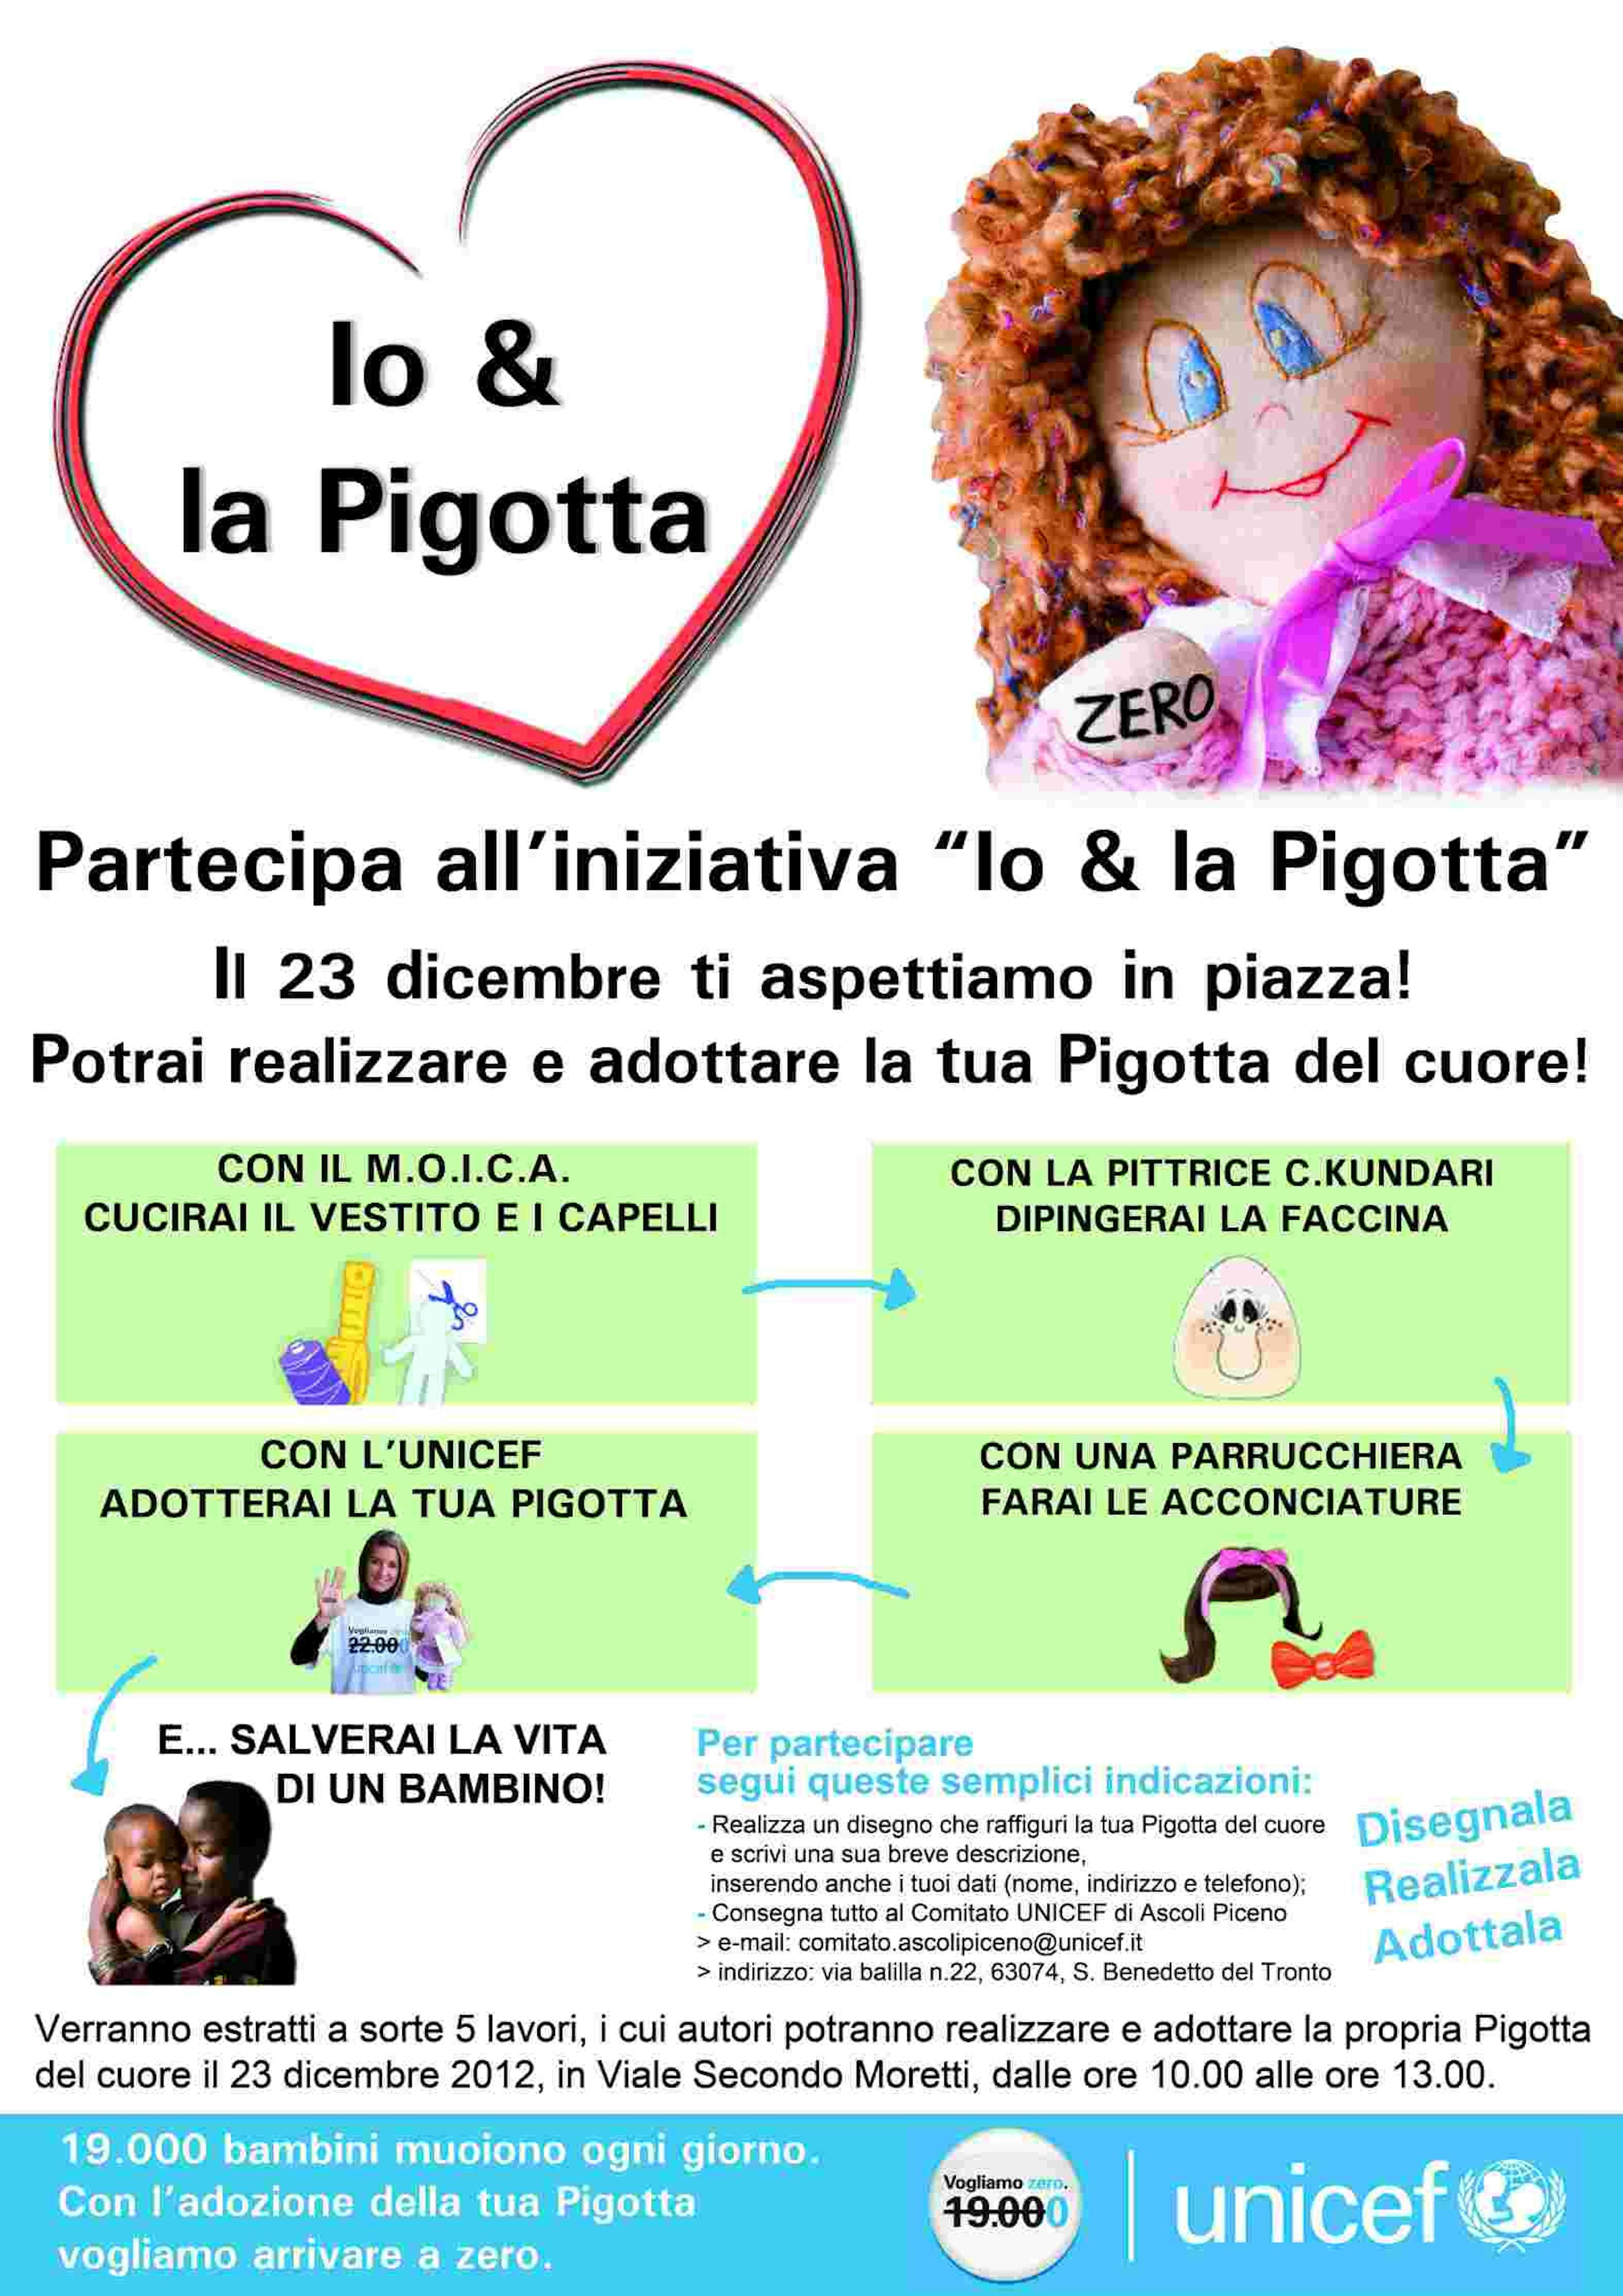 Io & la Pigotta, un'iniziativa per le scuole di San Benedetto del Tronto